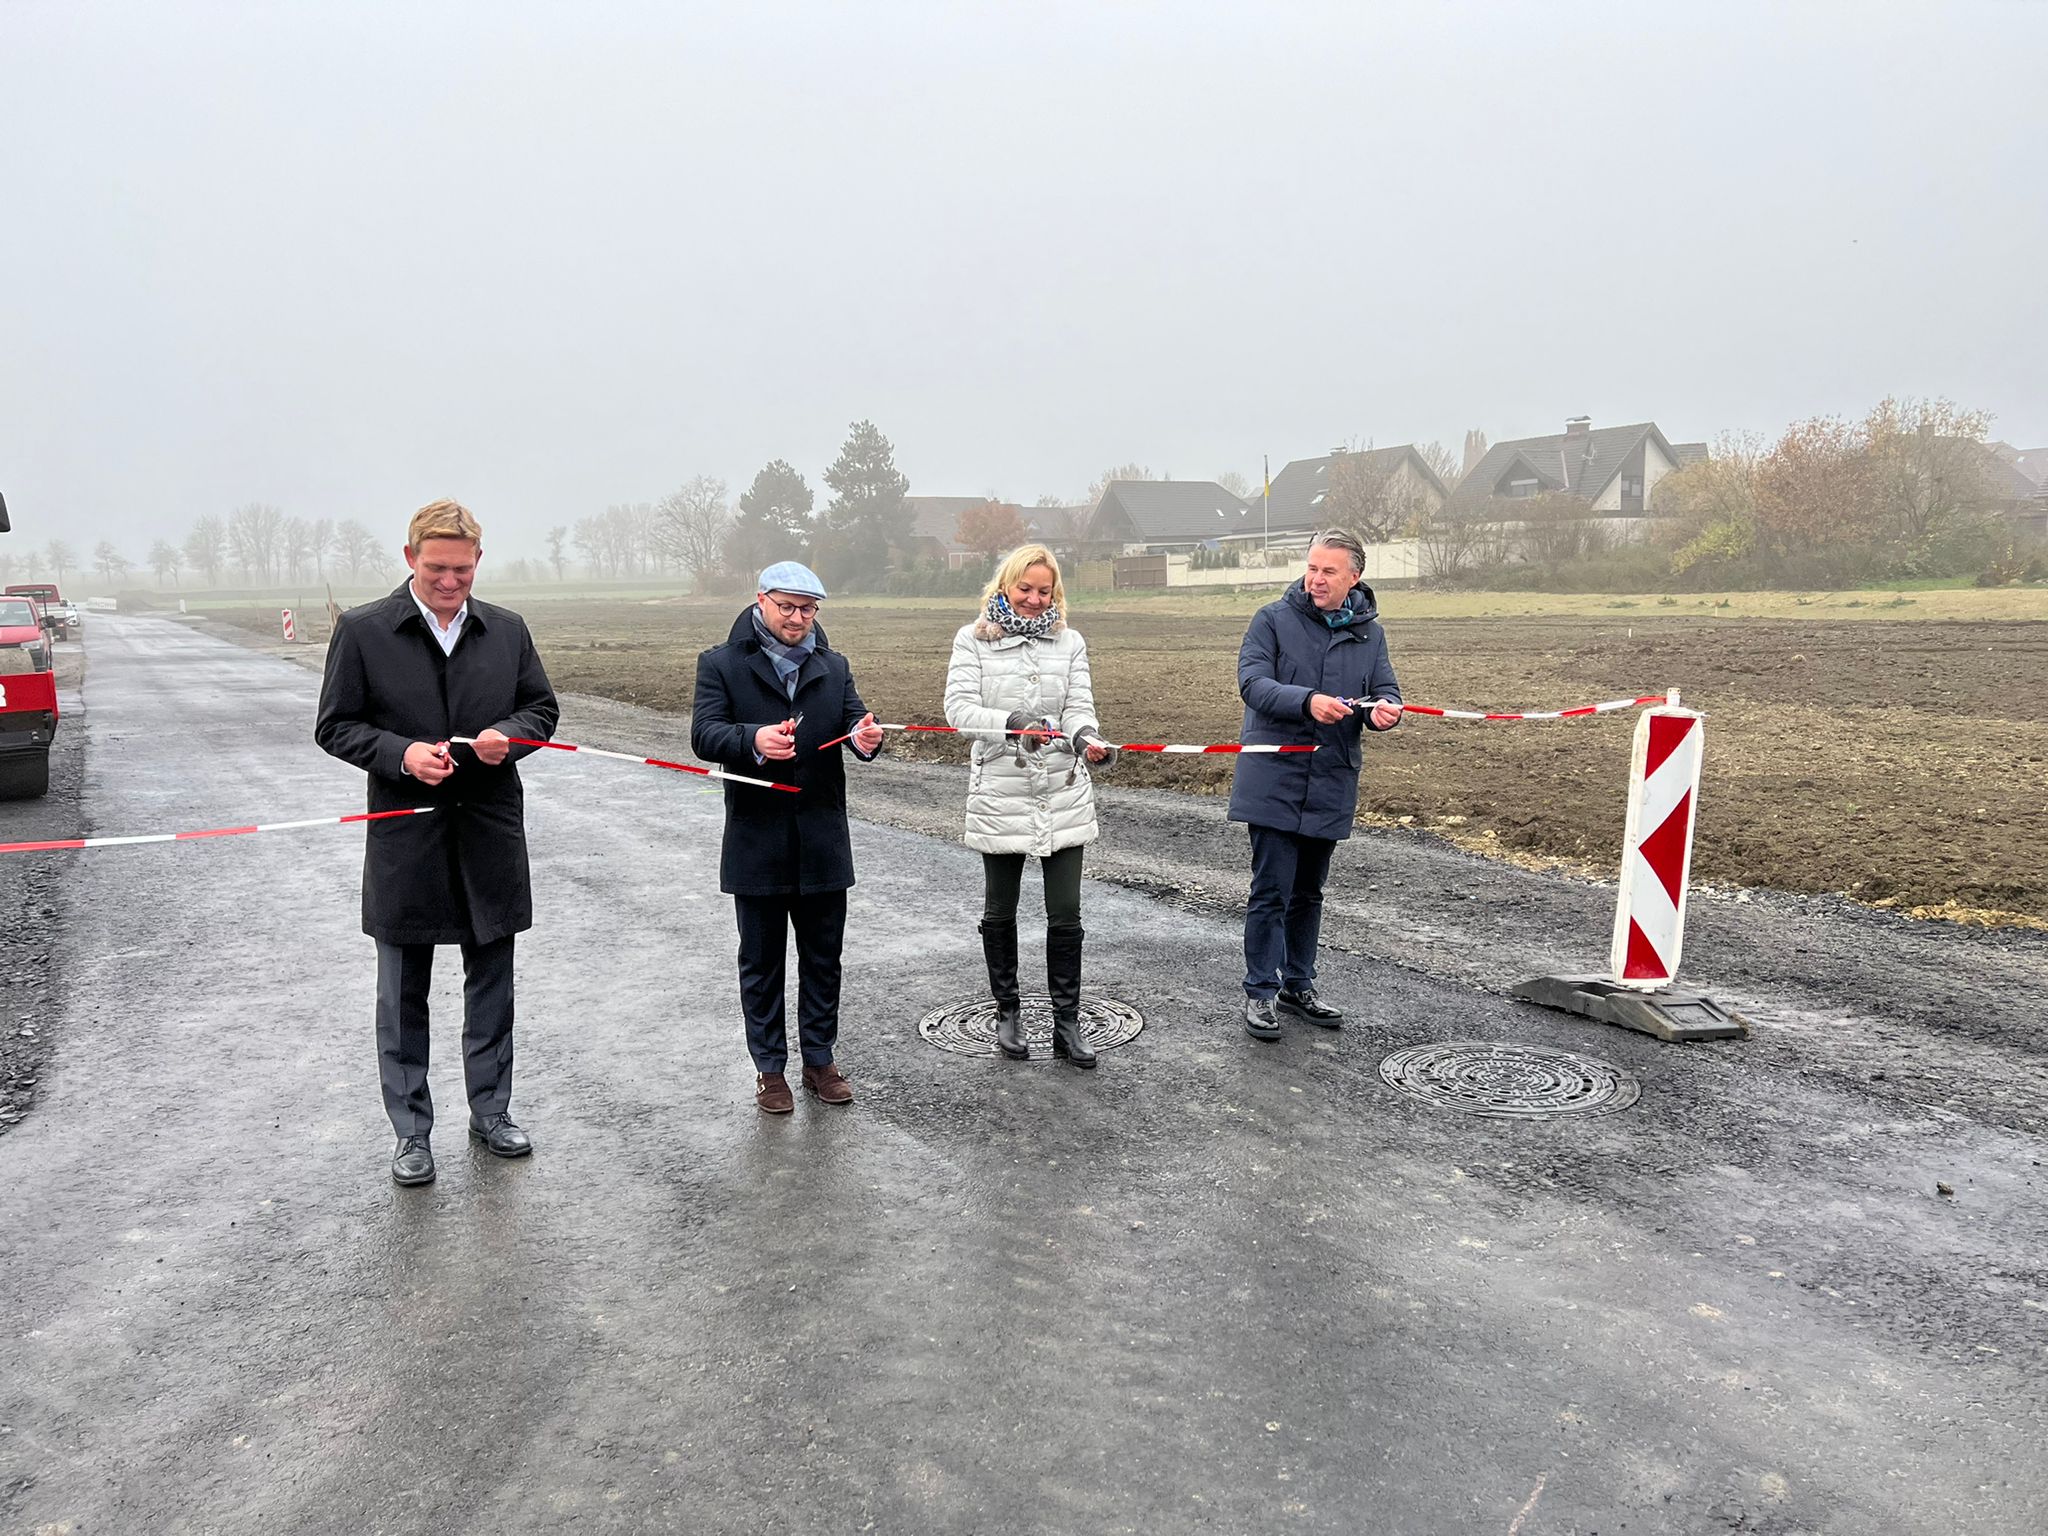 Sehnsuchtsort in bester Lage: Neubaugebiet Göttfricker Weg in Beckum bereit für den Wohnungsbau